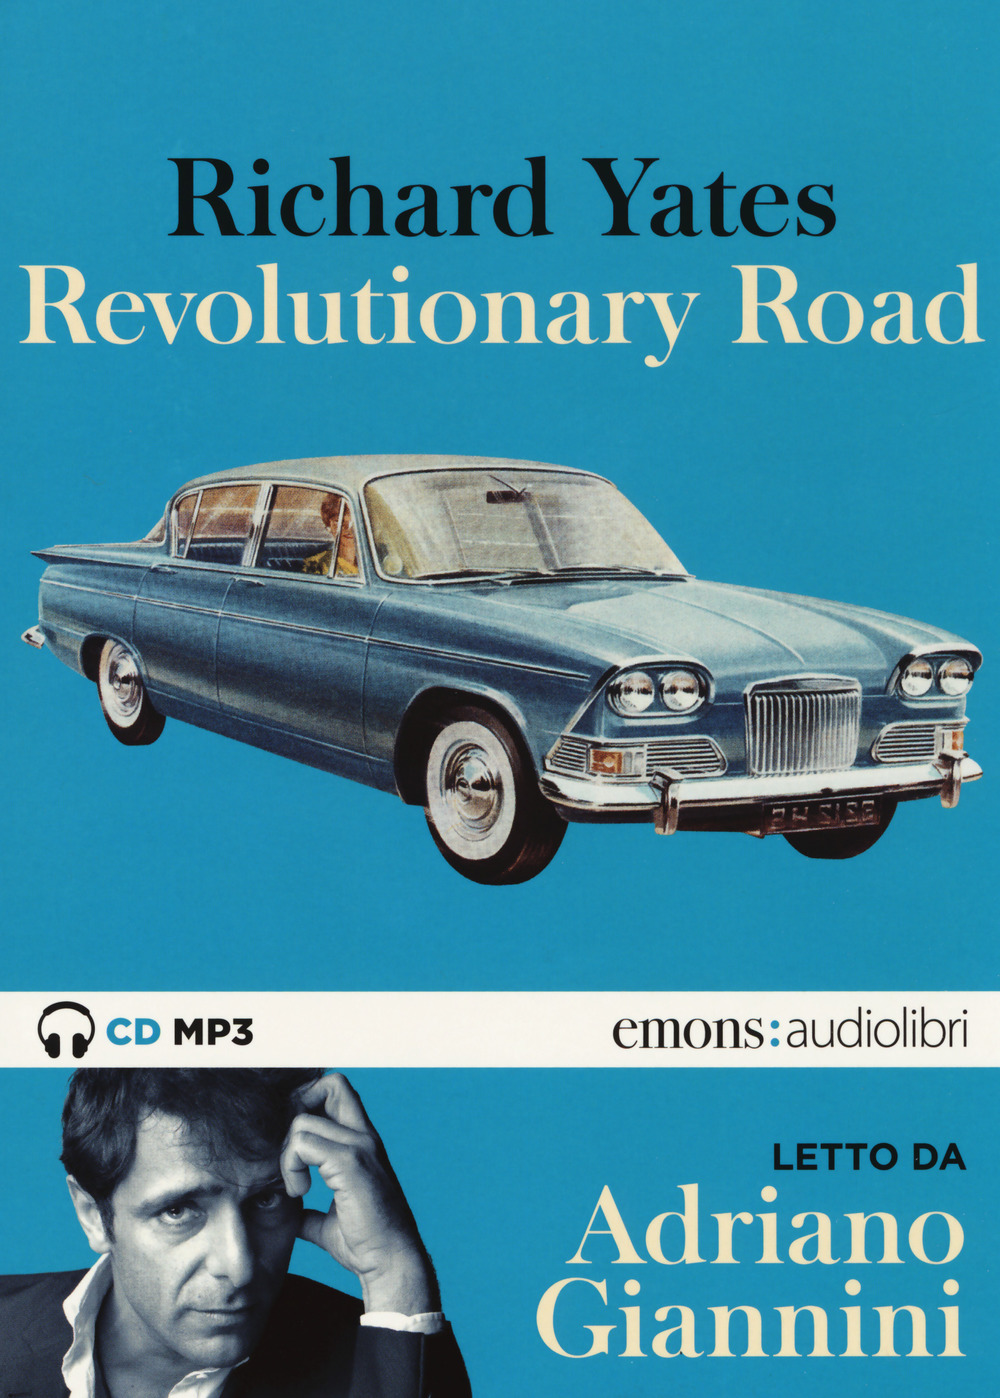 Audiolibro Richard Yates - Revolutionary Road Letto Da Adriano Giannini. Audiolibro. 2 CD Audio Formato MP3 NUOVO SIGILLATO, EDIZIONE DEL 25/10/2018 SUBITO DISPONIBILE